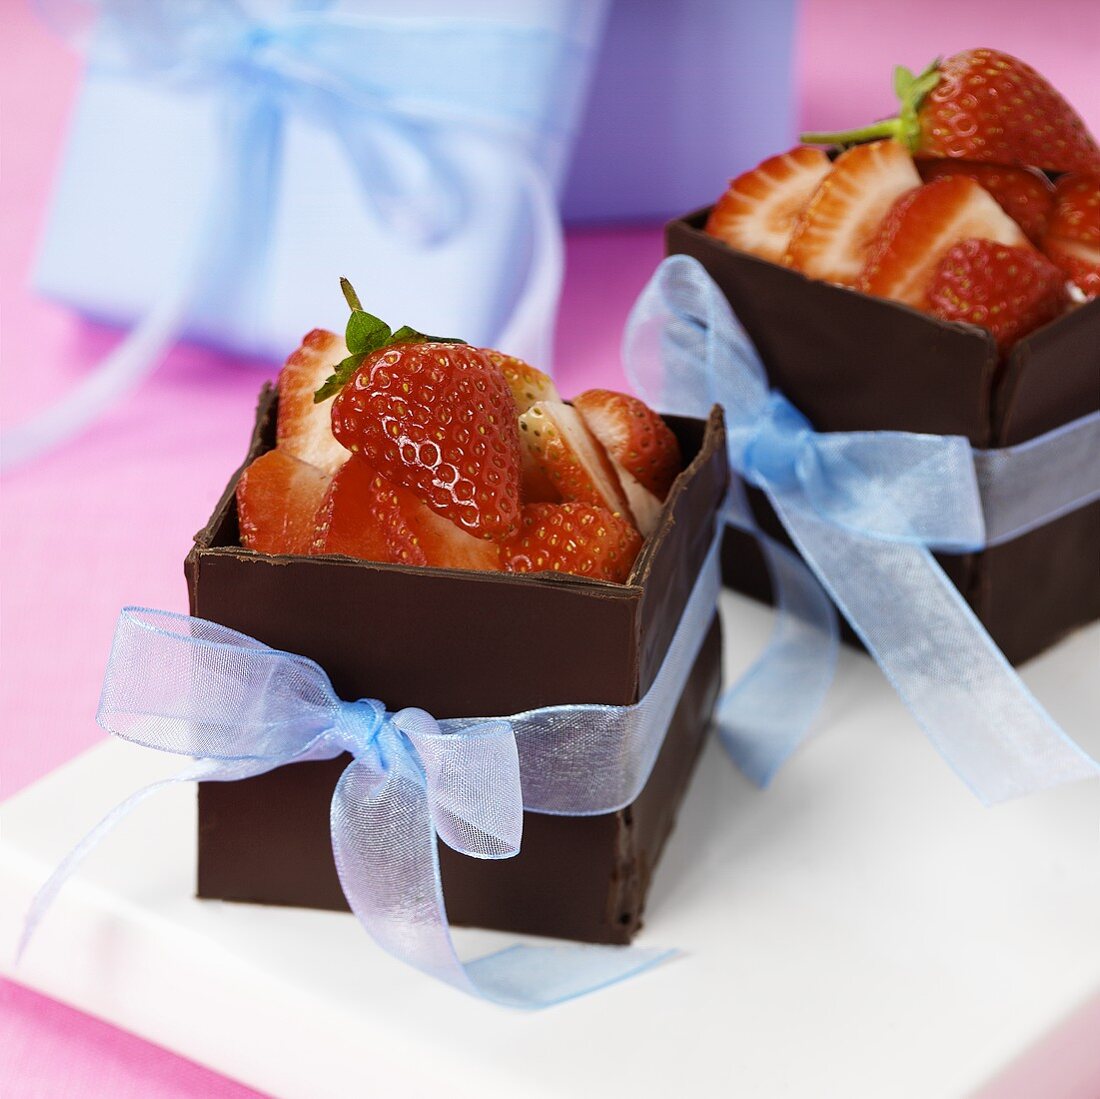 Fresh strawberries in chocolate shells